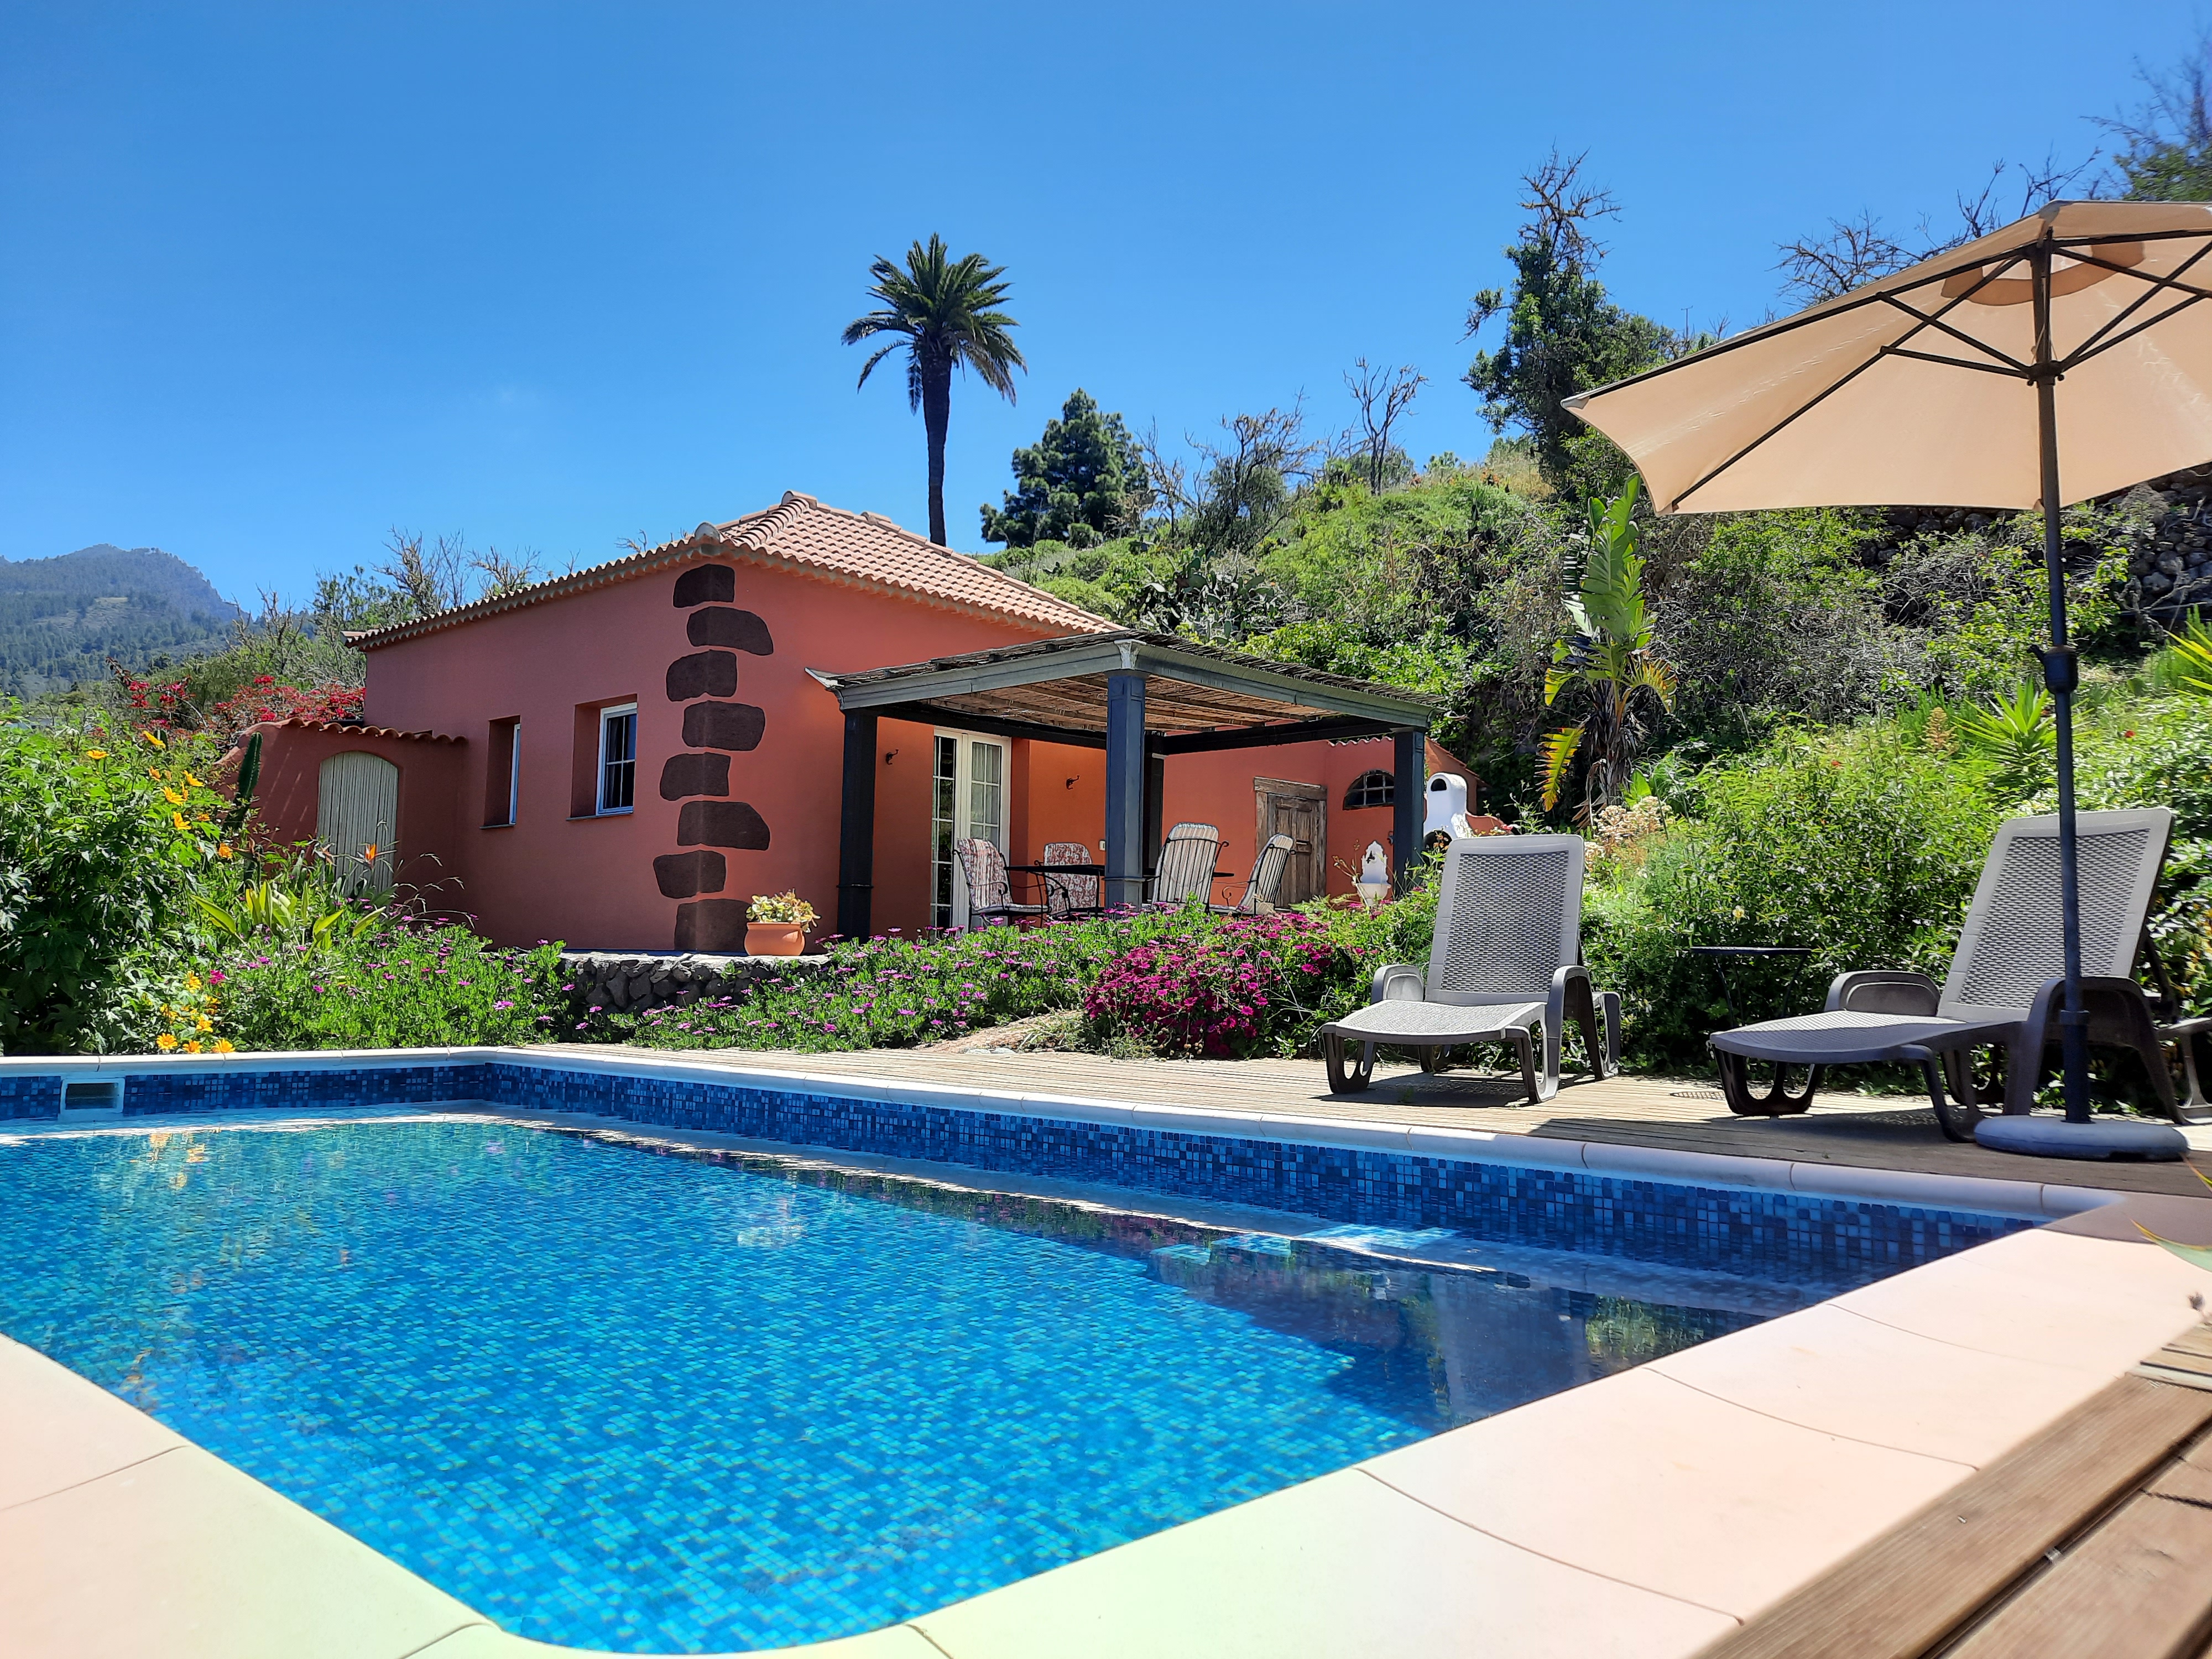 Ihr Ferienhaus auf La Palma